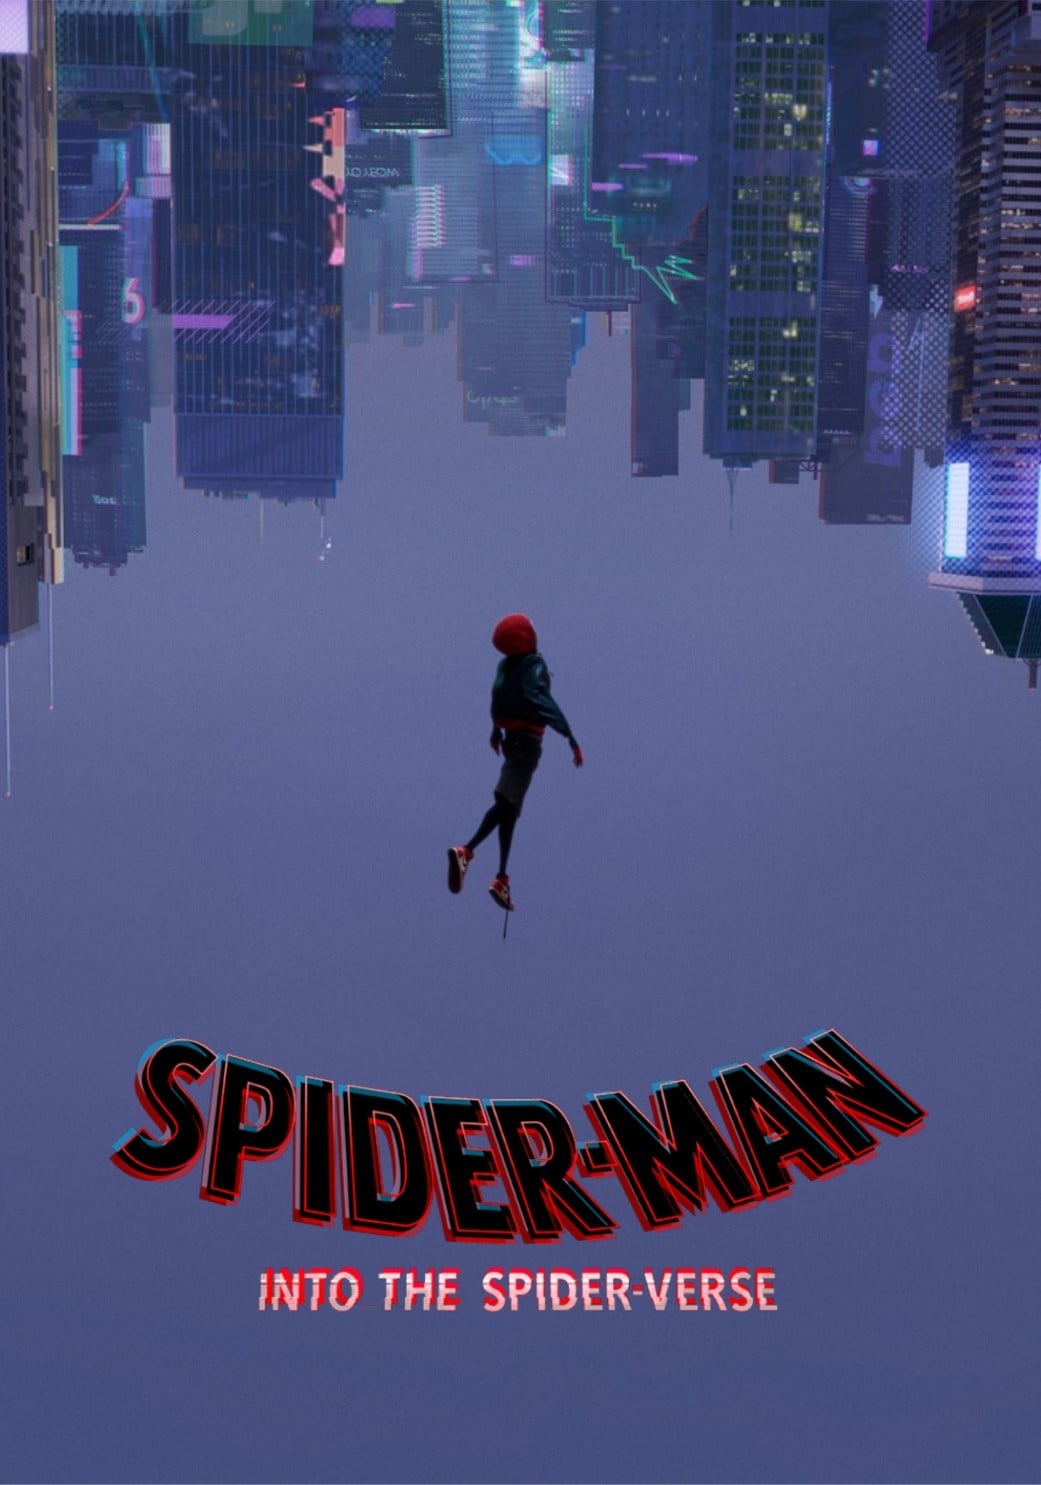 Spider-Man: into the spider-verse